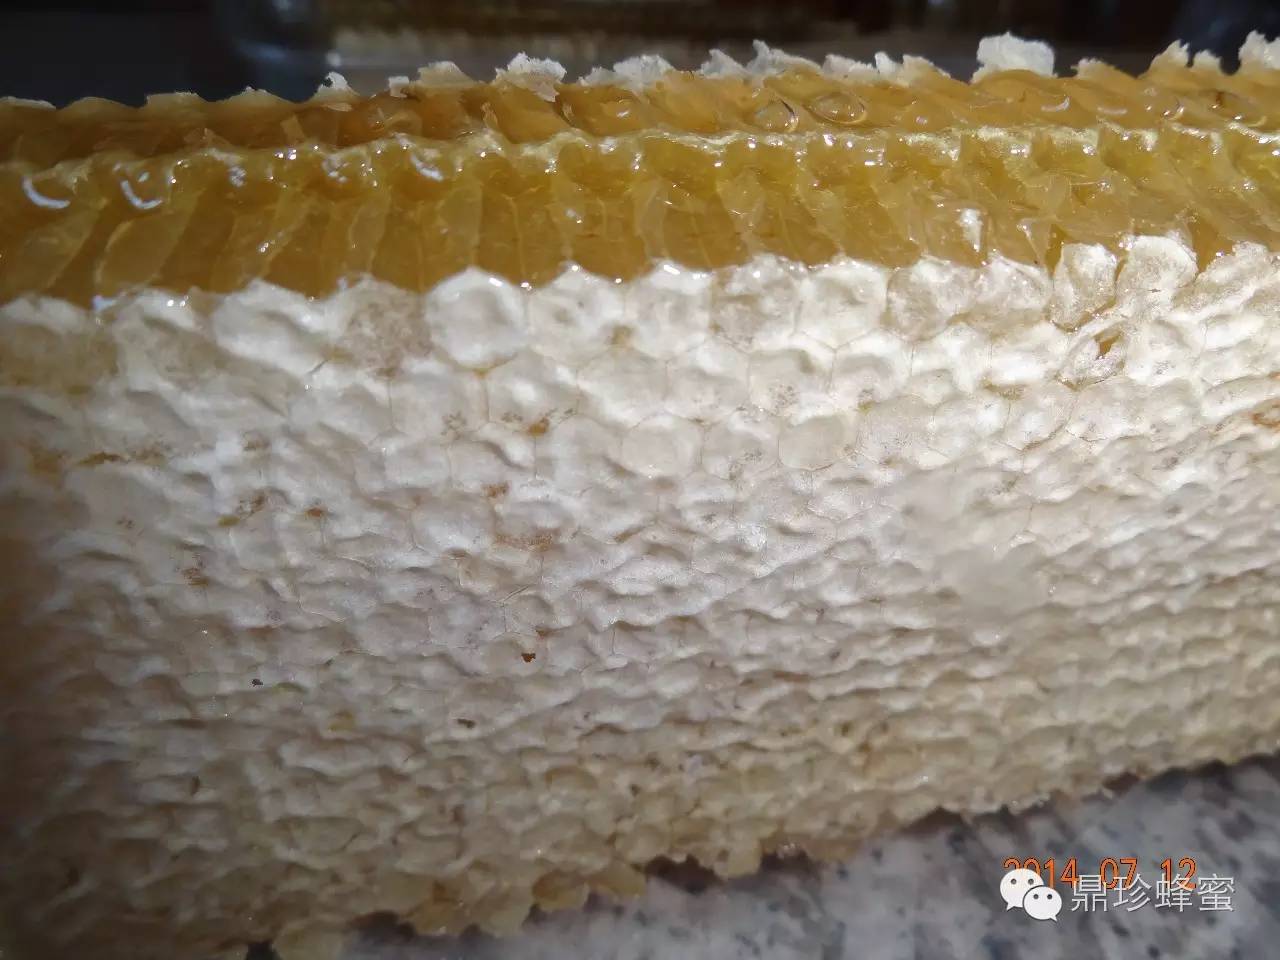 蜂毒对身体有副作用吗 蜂蜜过敏性咳嗽 冰镇蜂蜜柠檬 白醋和蜂蜜减肥 广安邻水县包式蜂蜜